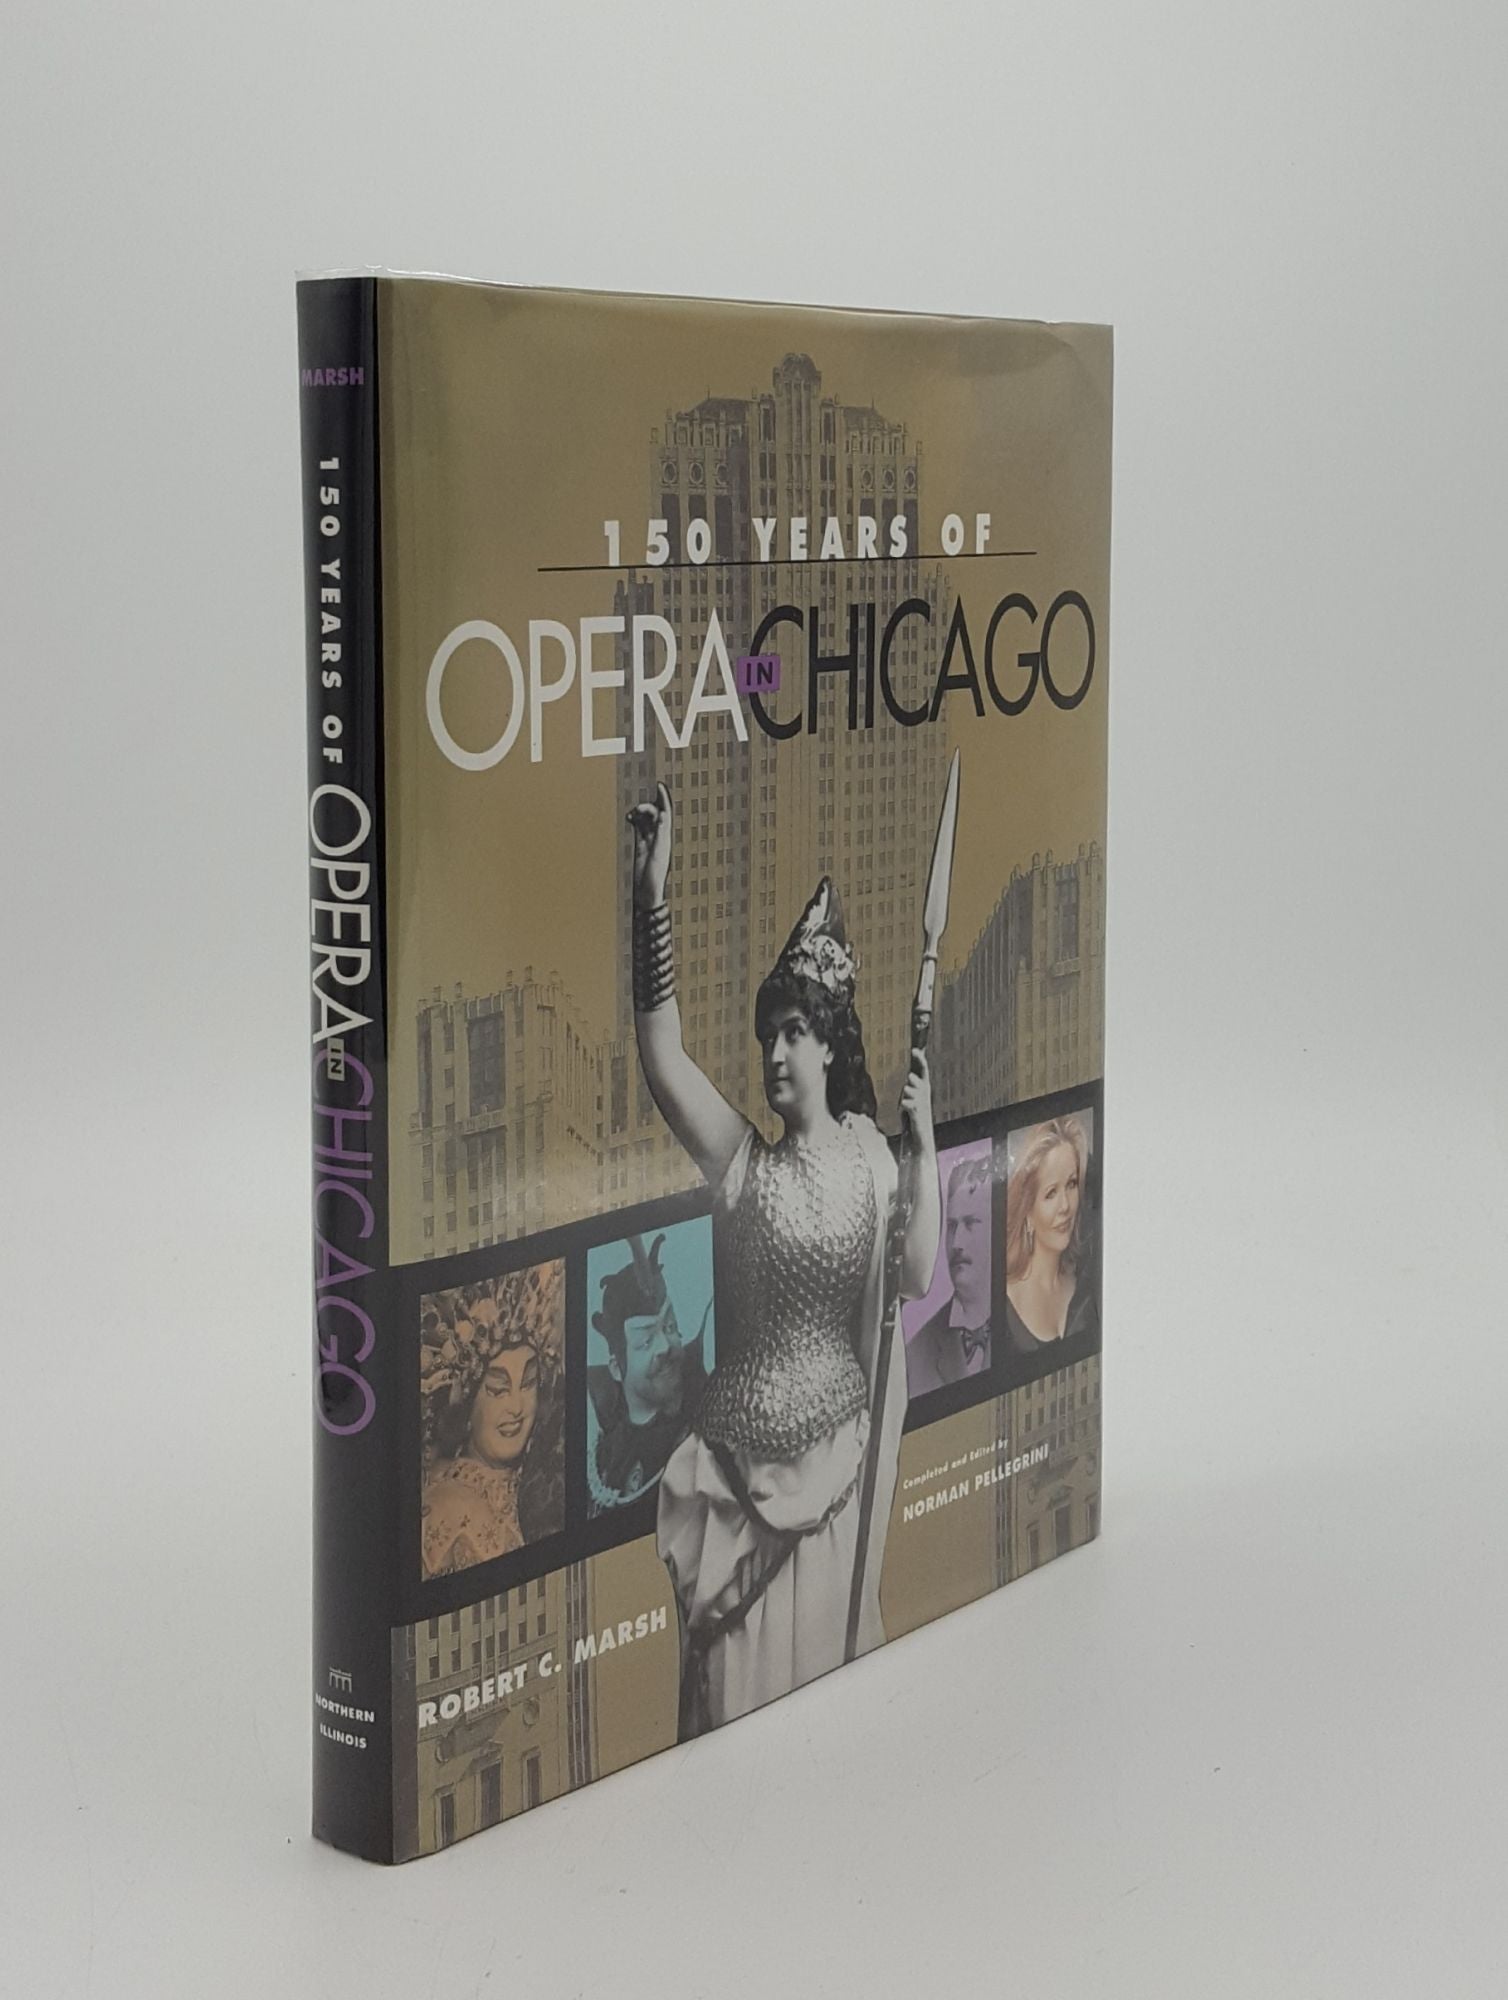 MARSH Robert C. - 150 Years of Opera in Chicago